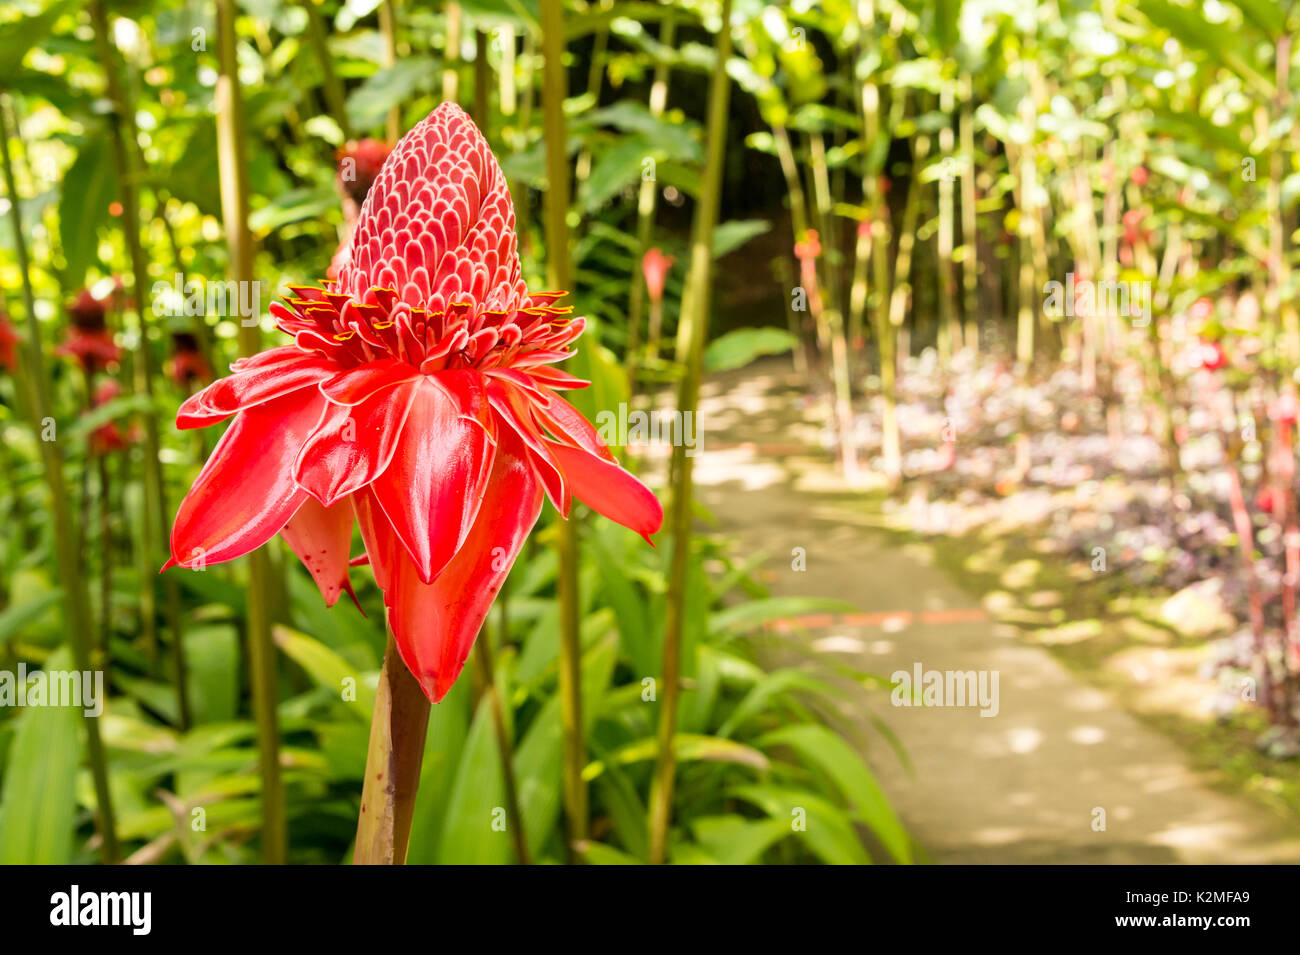 Tropical flower red torch ginger (Etlingera elatior) Stock Photo